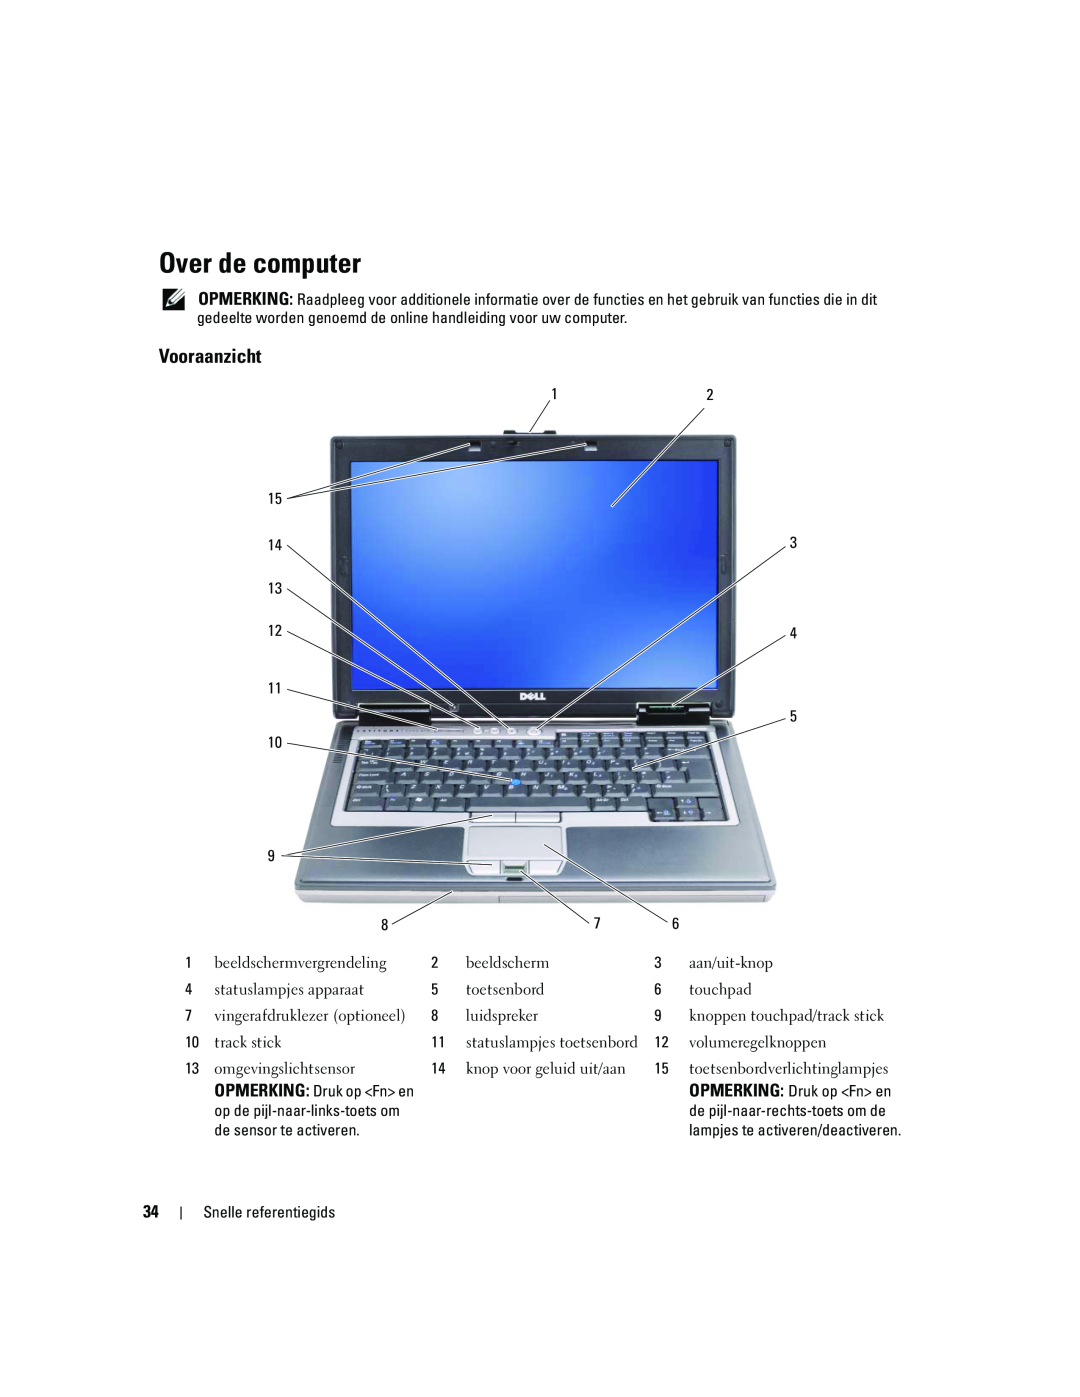 Dell ATG D620 manual Over de computer, Vooraanzicht 